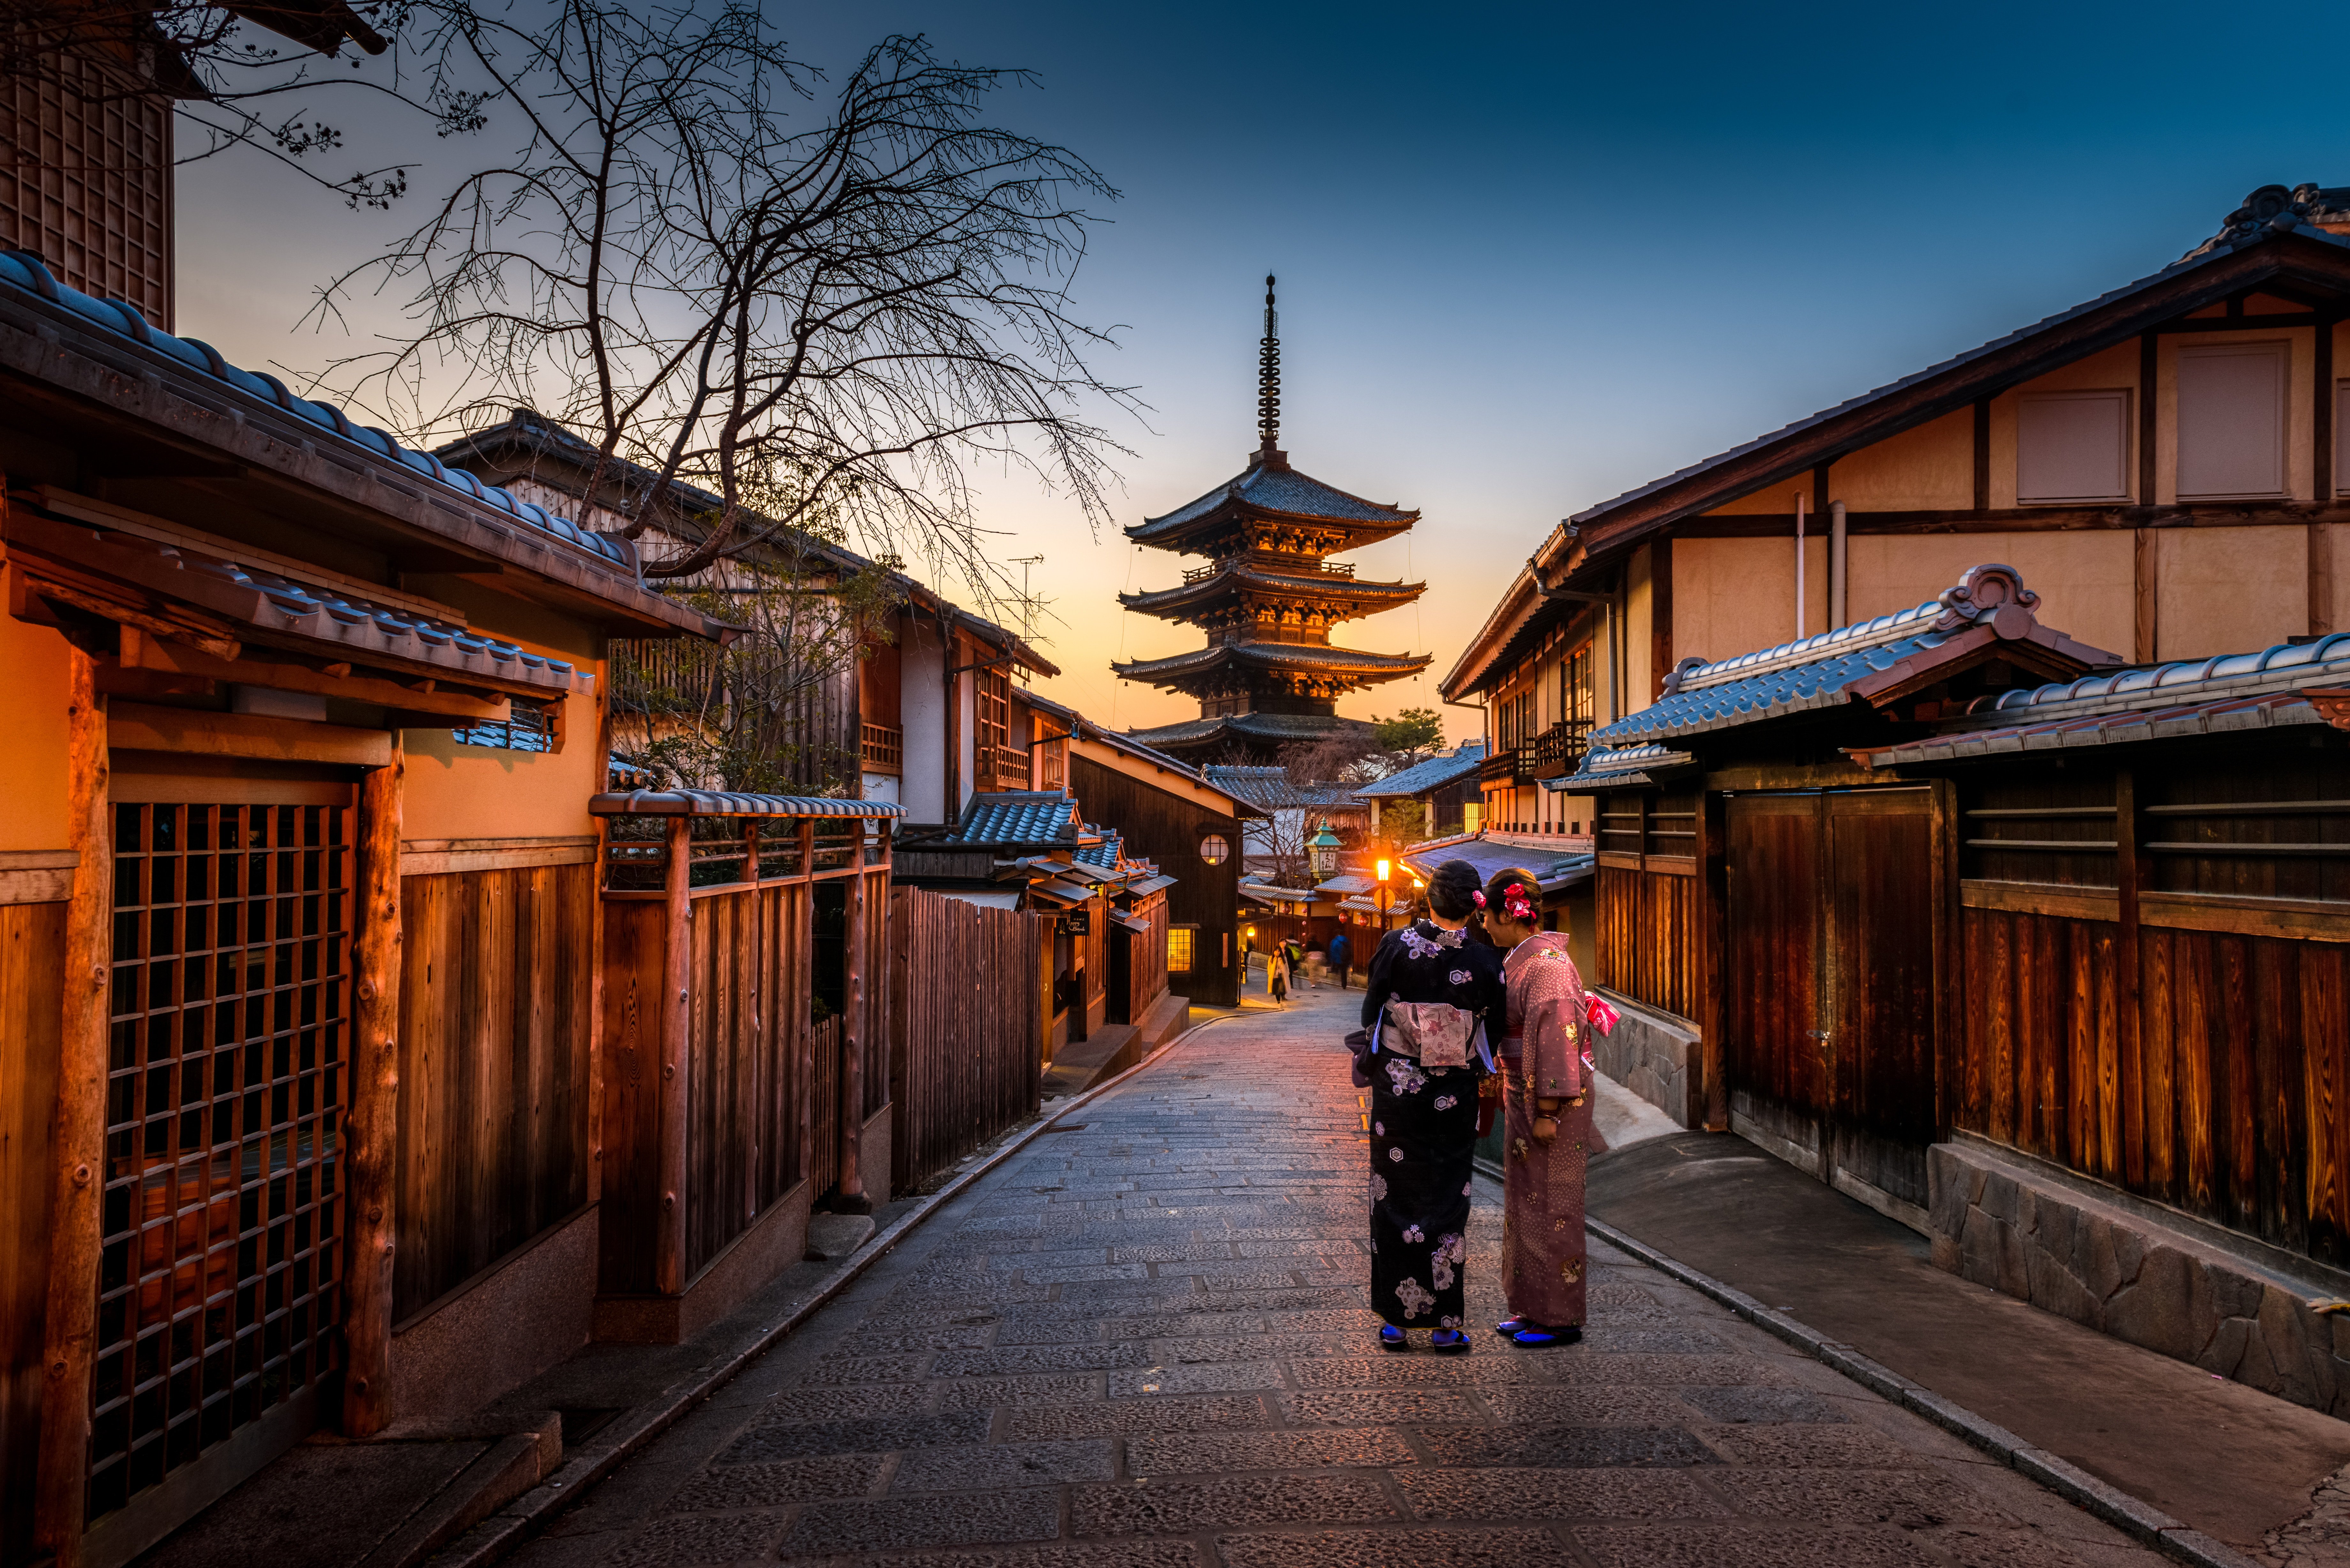 Đón nhận một màn hoàng hôn tuyệt đẹp của Nhật Bản với hình ảnh nền Japanese Sunset. Với những tông màu ấm áp và những đường nét tinh tế, bạn sẽ cảm nhận được sự yên tĩnh và nhẹ nhàng của một chiều tàn. Hãy tìm hiểu thêm về hình ảnh nền Japanese Sunset và bắt đầu bình yên những khoảnh khắc cuối ngày của mình.